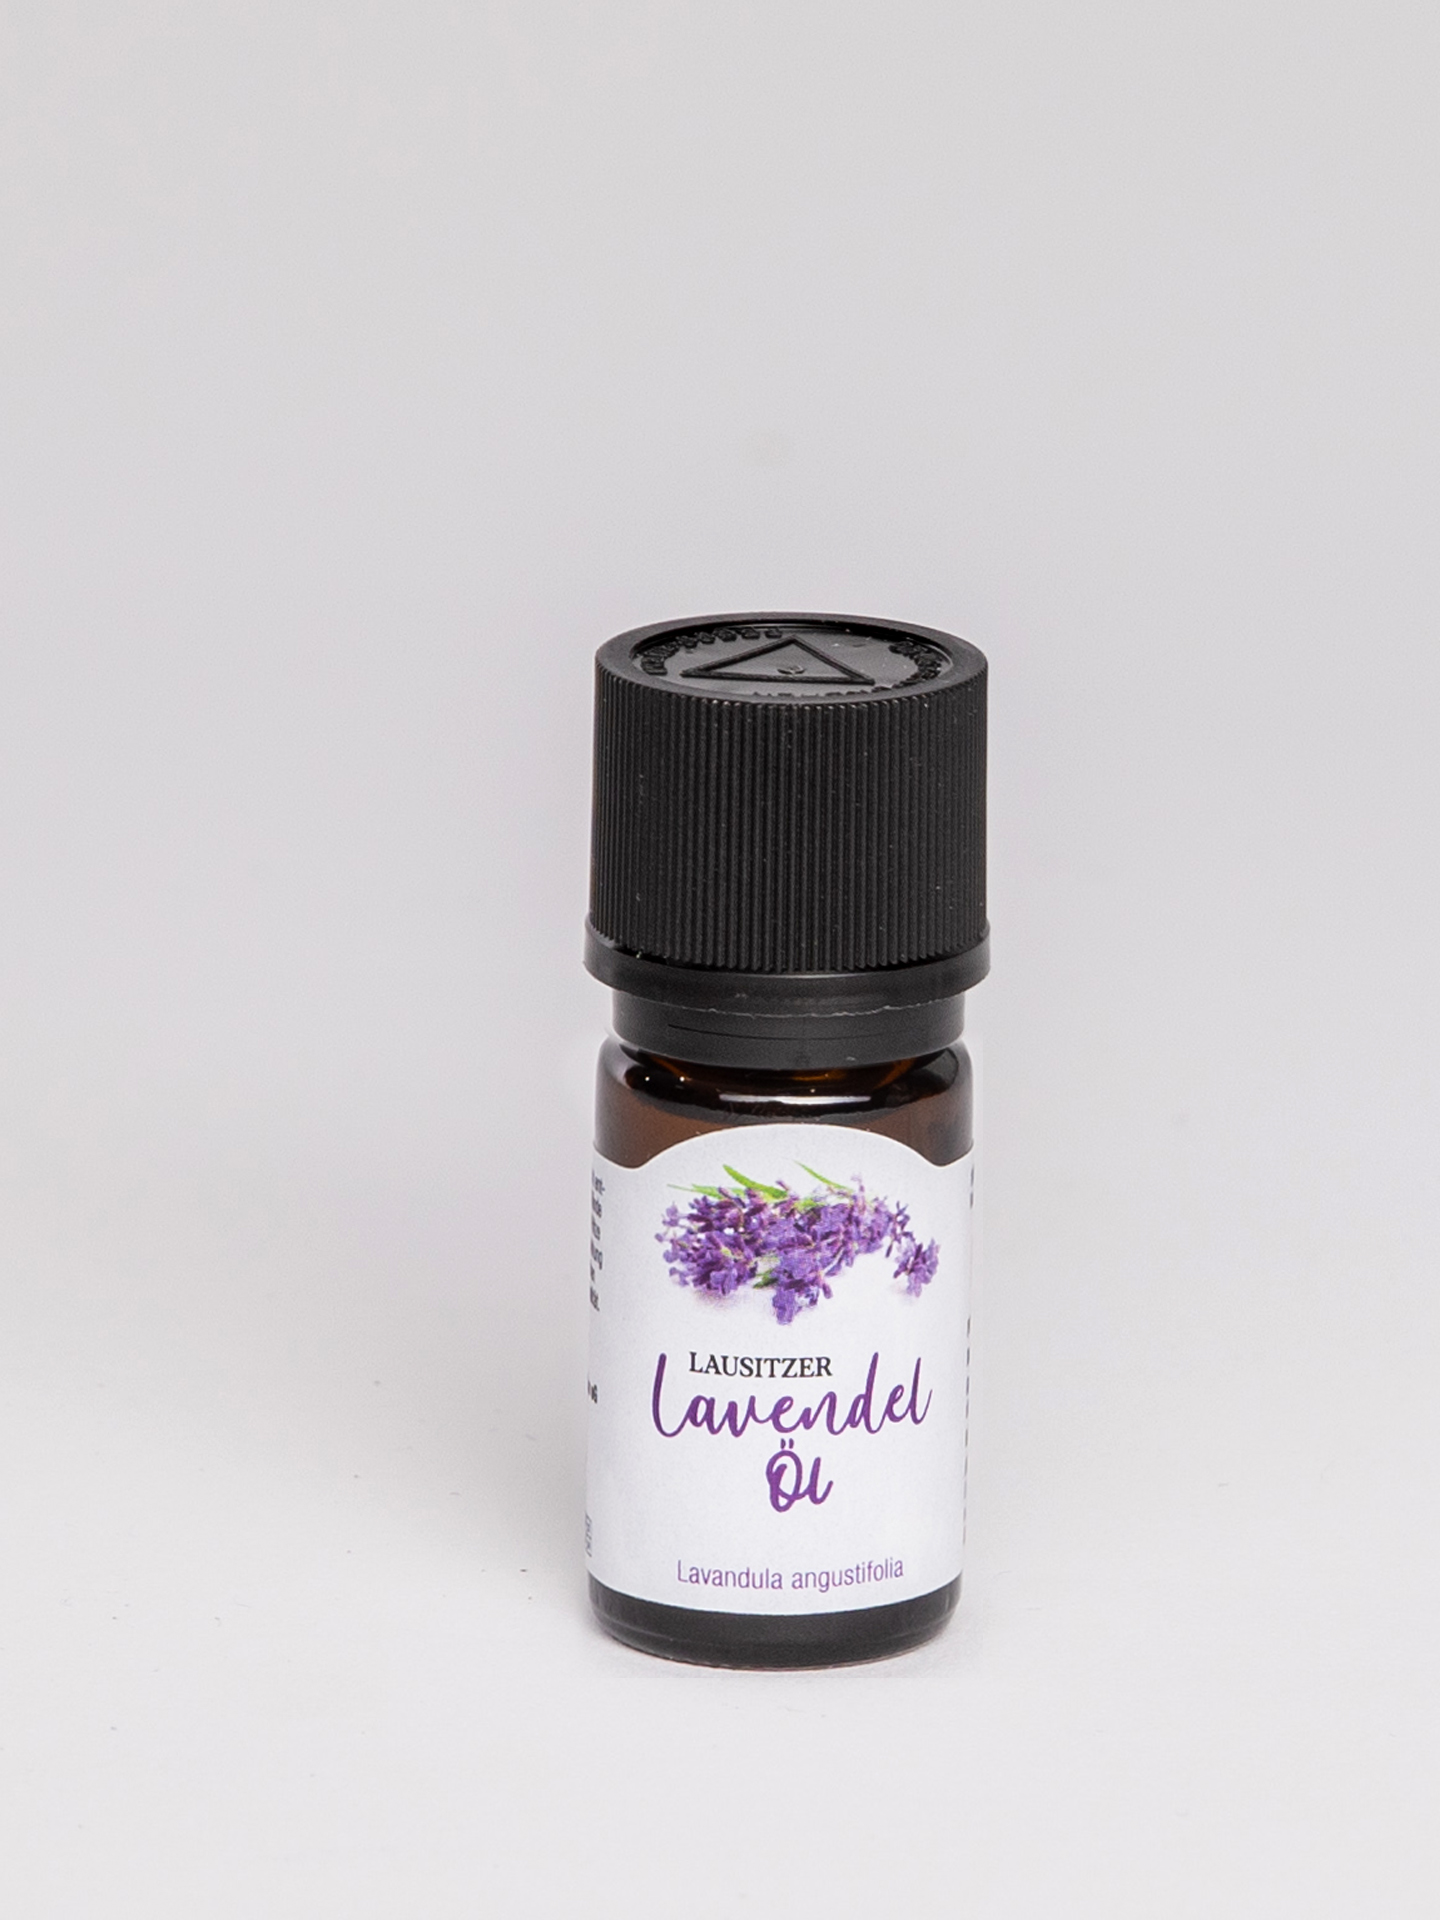 Lavendelöl Lavandula angustifolia